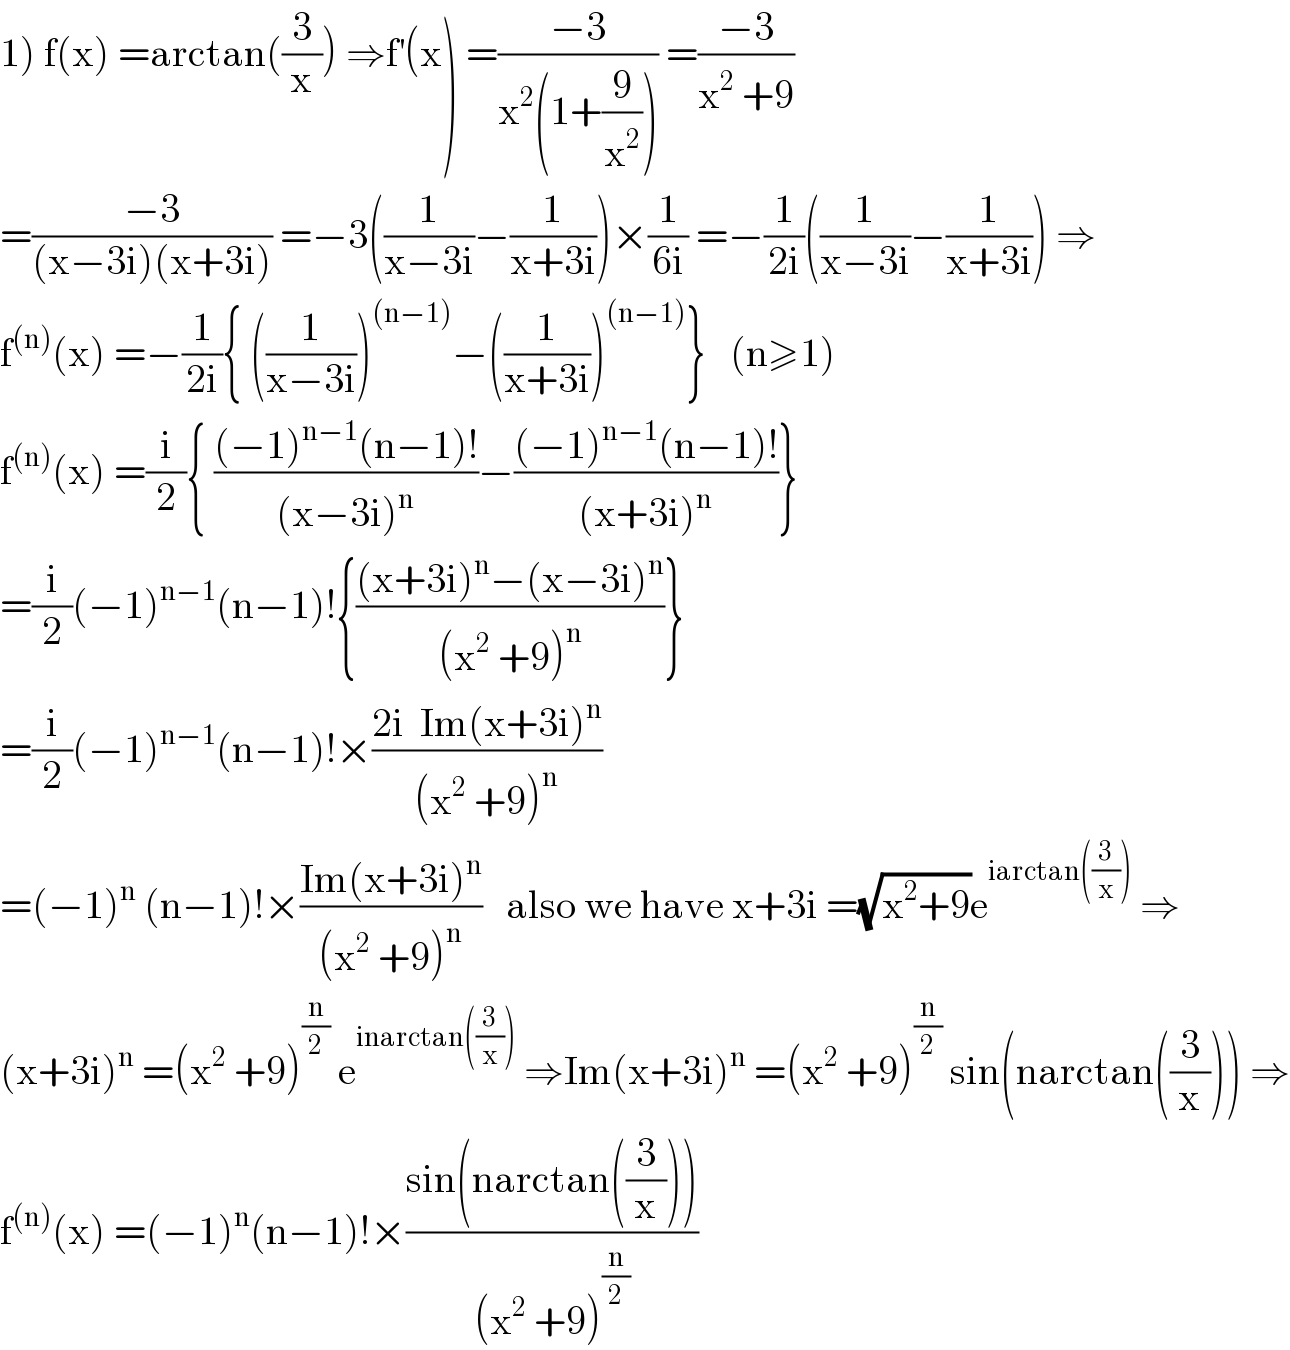 1) f(x) =arctan((3/x)) ⇒f^′ (x) =((−3)/(x^2 (1+(9/x^2 )))) =((−3)/(x^2  +9))  =((−3)/((x−3i)(x+3i))) =−3((1/(x−3i))−(1/(x+3i)))×(1/(6i)) =−(1/(2i))((1/(x−3i))−(1/(x+3i))) ⇒  f^((n)) (x) =−(1/(2i)){ ((1/(x−3i)))^((n−1)) −((1/(x+3i)))^((n−1)) }   (n≥1)  f^((n)) (x) =(i/2){ (((−1)^(n−1) (n−1)!)/((x−3i)^n ))−(((−1)^(n−1) (n−1)!)/((x+3i)^n ))}  =(i/2)(−1)^(n−1) (n−1)!{(((x+3i)^n −(x−3i)^n )/((x^2  +9)^n ))}  =(i/2)(−1)^(n−1) (n−1)!×((2i  Im(x+3i)^n )/((x^2  +9)^n ))  =(−1)^n  (n−1)!×((Im(x+3i)^n )/((x^2  +9)^n ))   also we have x+3i =(√(x^2 +9))e^(iarctan((3/x)))  ⇒  (x+3i)^n  =(x^2  +9)^(n/2)  e^(inarctan((3/x)))  ⇒Im(x+3i)^n  =(x^2  +9)^(n/2)  sin(narctan((3/x))) ⇒  f^((n)) (x) =(−1)^n (n−1)!×((sin(narctan((3/x))))/((x^2  +9)^(n/2) ))  